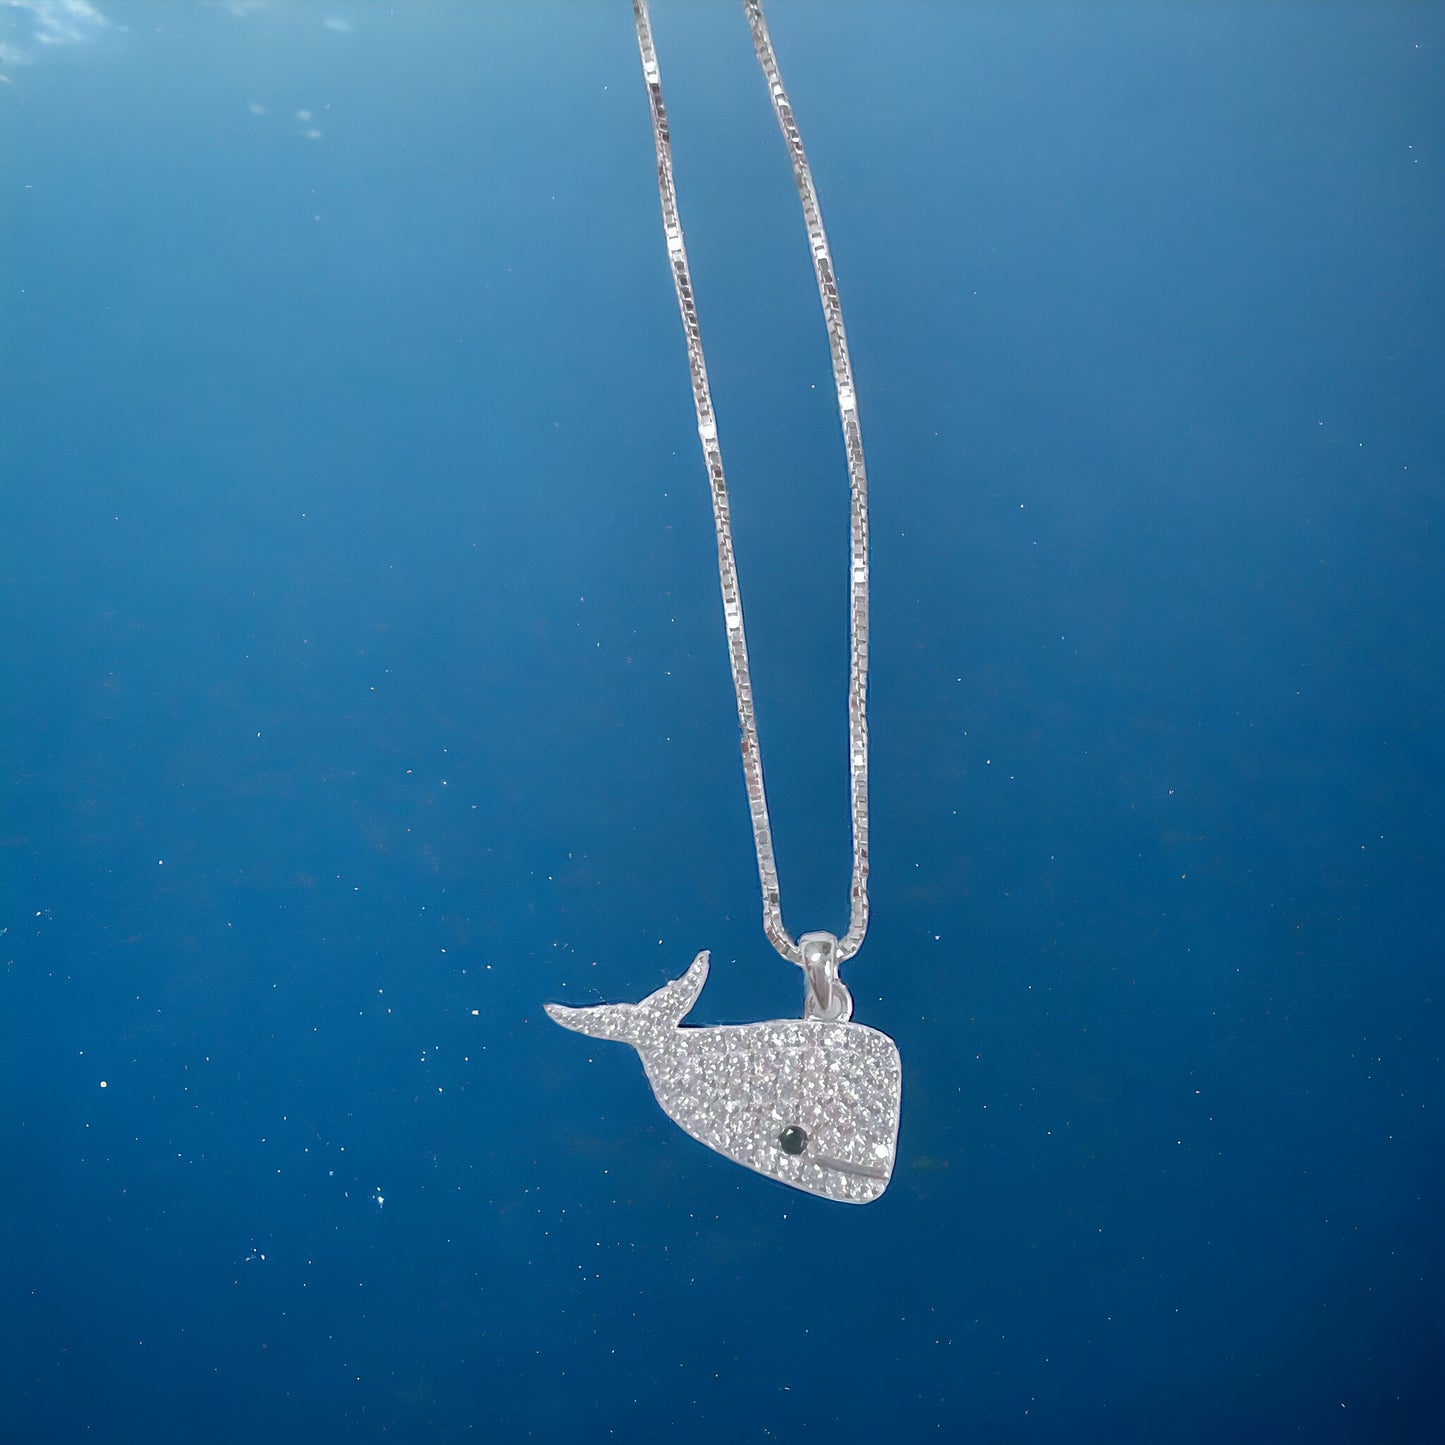 𝟓𝟐𝑯𝒛 𝑾𝒉𝒂𝒍𝒆 | 鯨語頸鏈